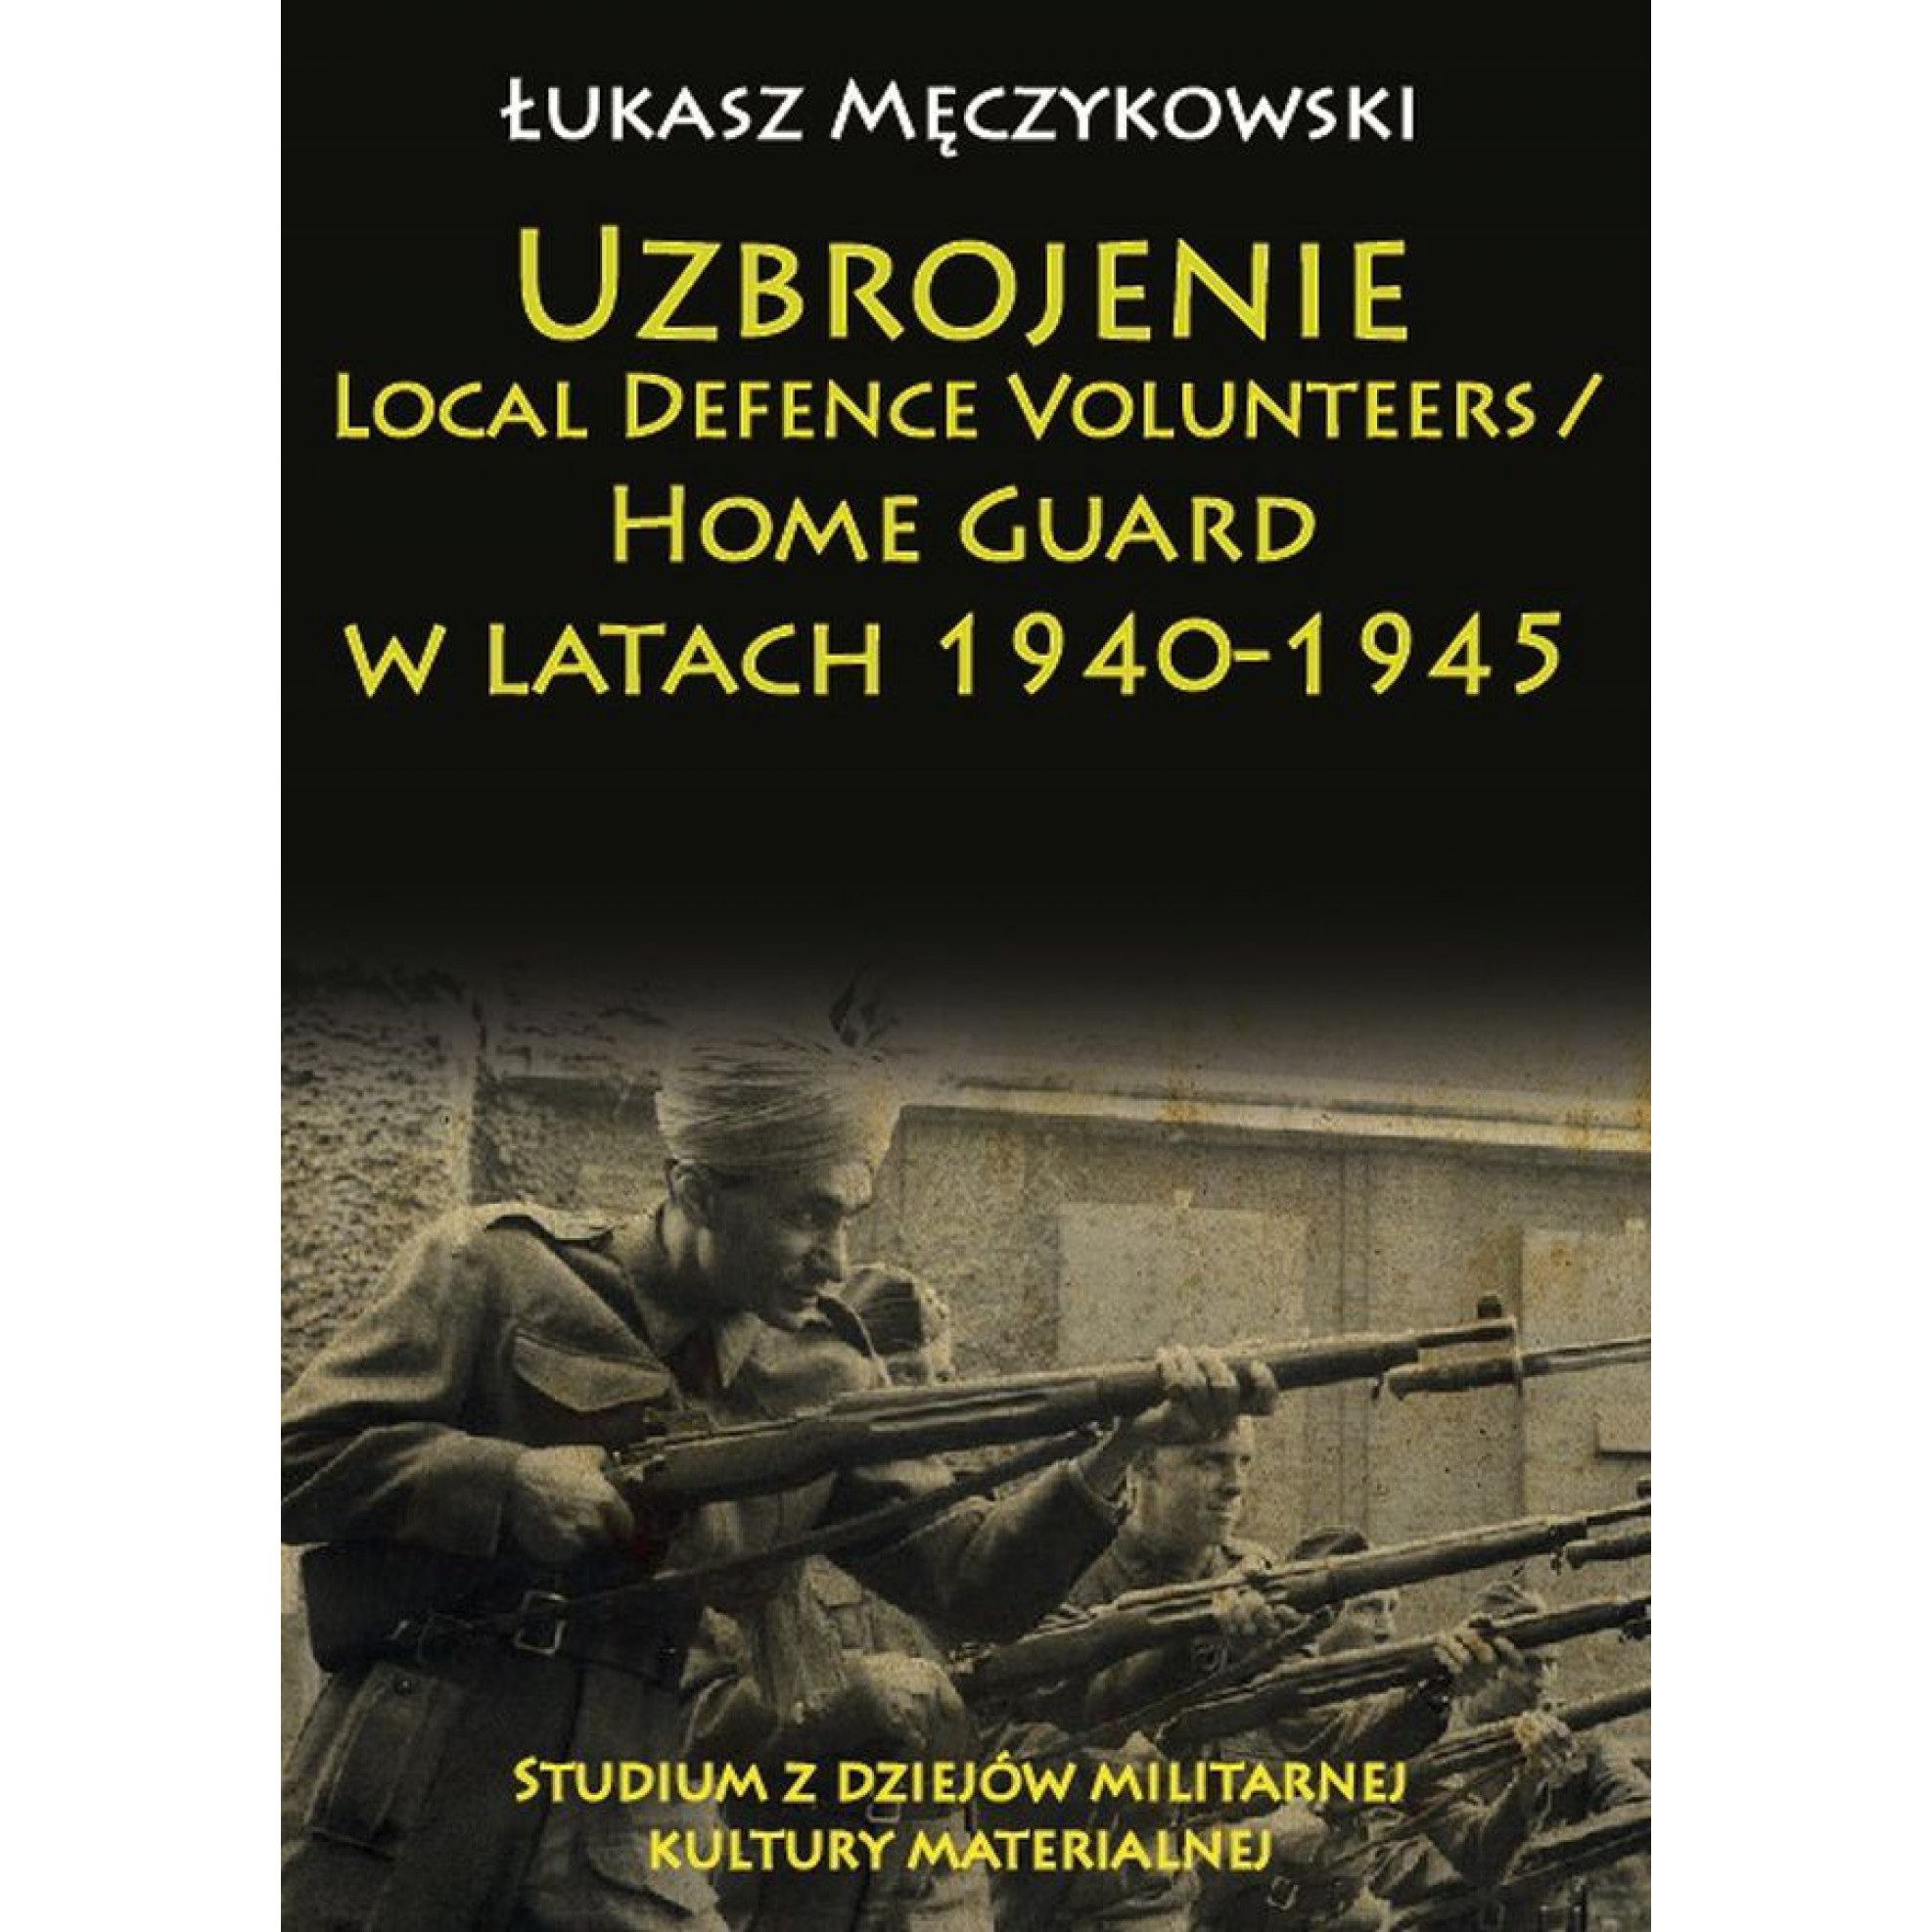 Uzbrojenie Local Defence Volunteers / Home Guard w latach 1940-1945. Studium z dziejów militarnej kultury materialnej - Outlet